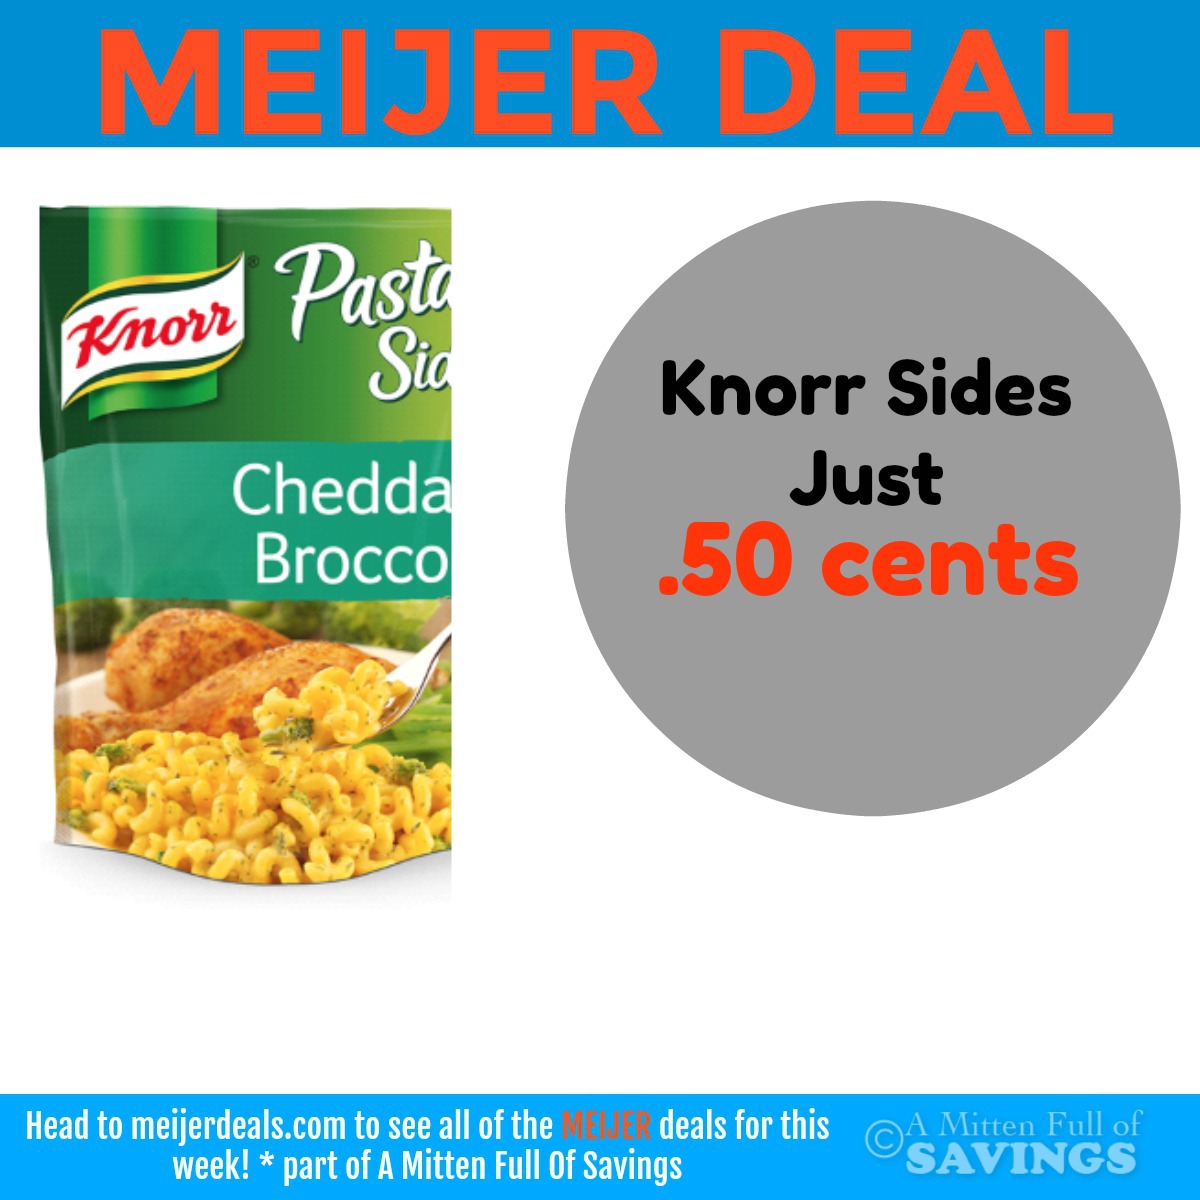 Meijer Deal on Knorr Sides